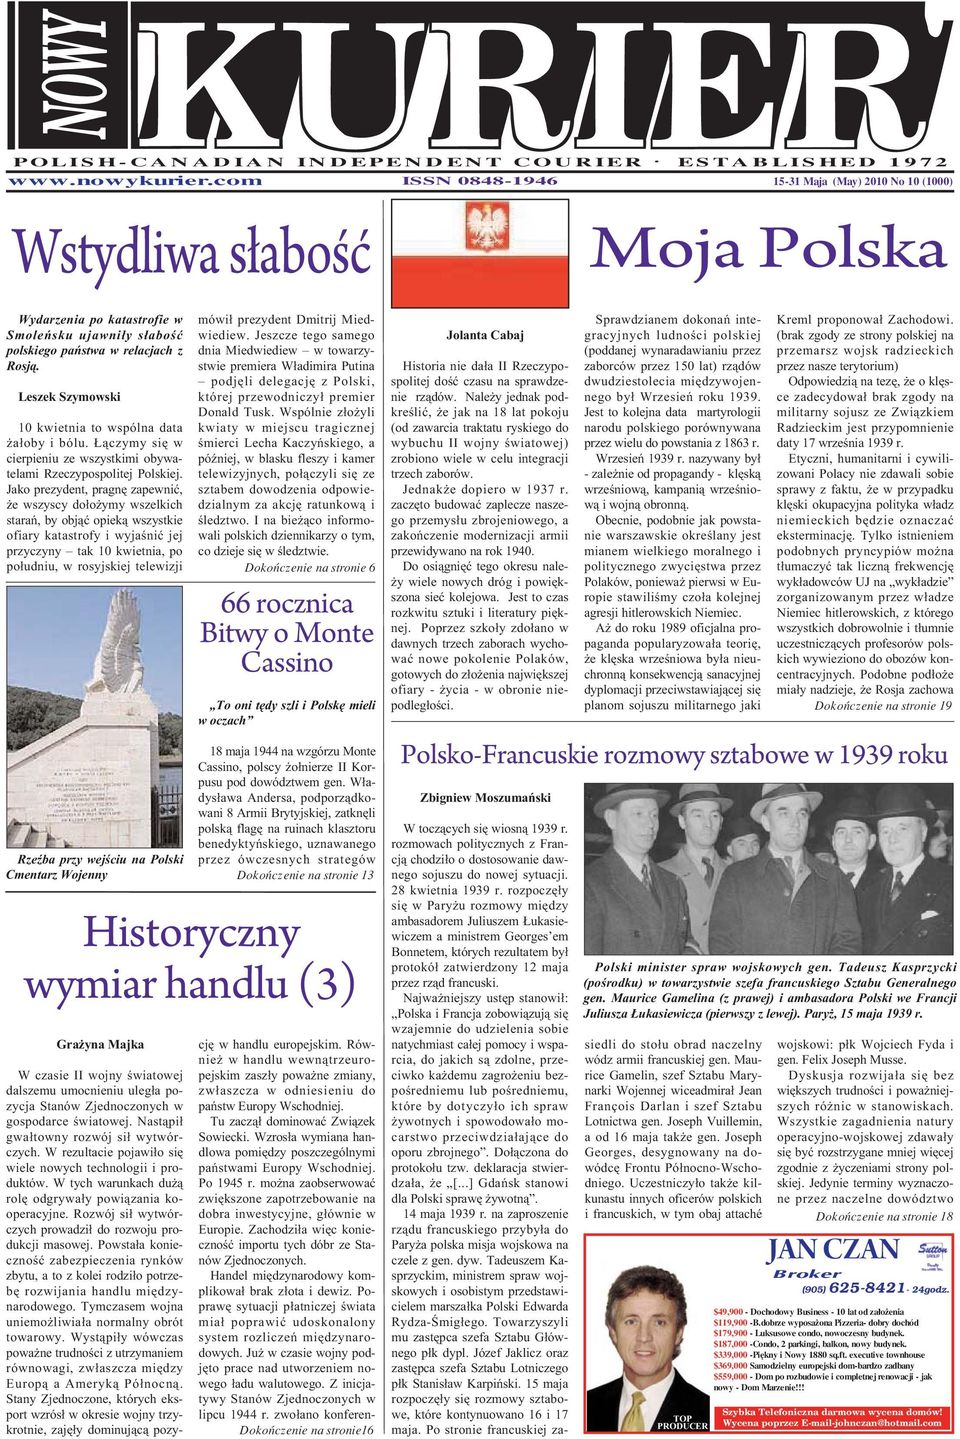 Leszek Szymowski 10 kwietnia to wspólna data żałoby i bólu. Łączymy się w cier pieniu ze wszystkimi obywa - telami Rzeczypospolitej Polskiej.